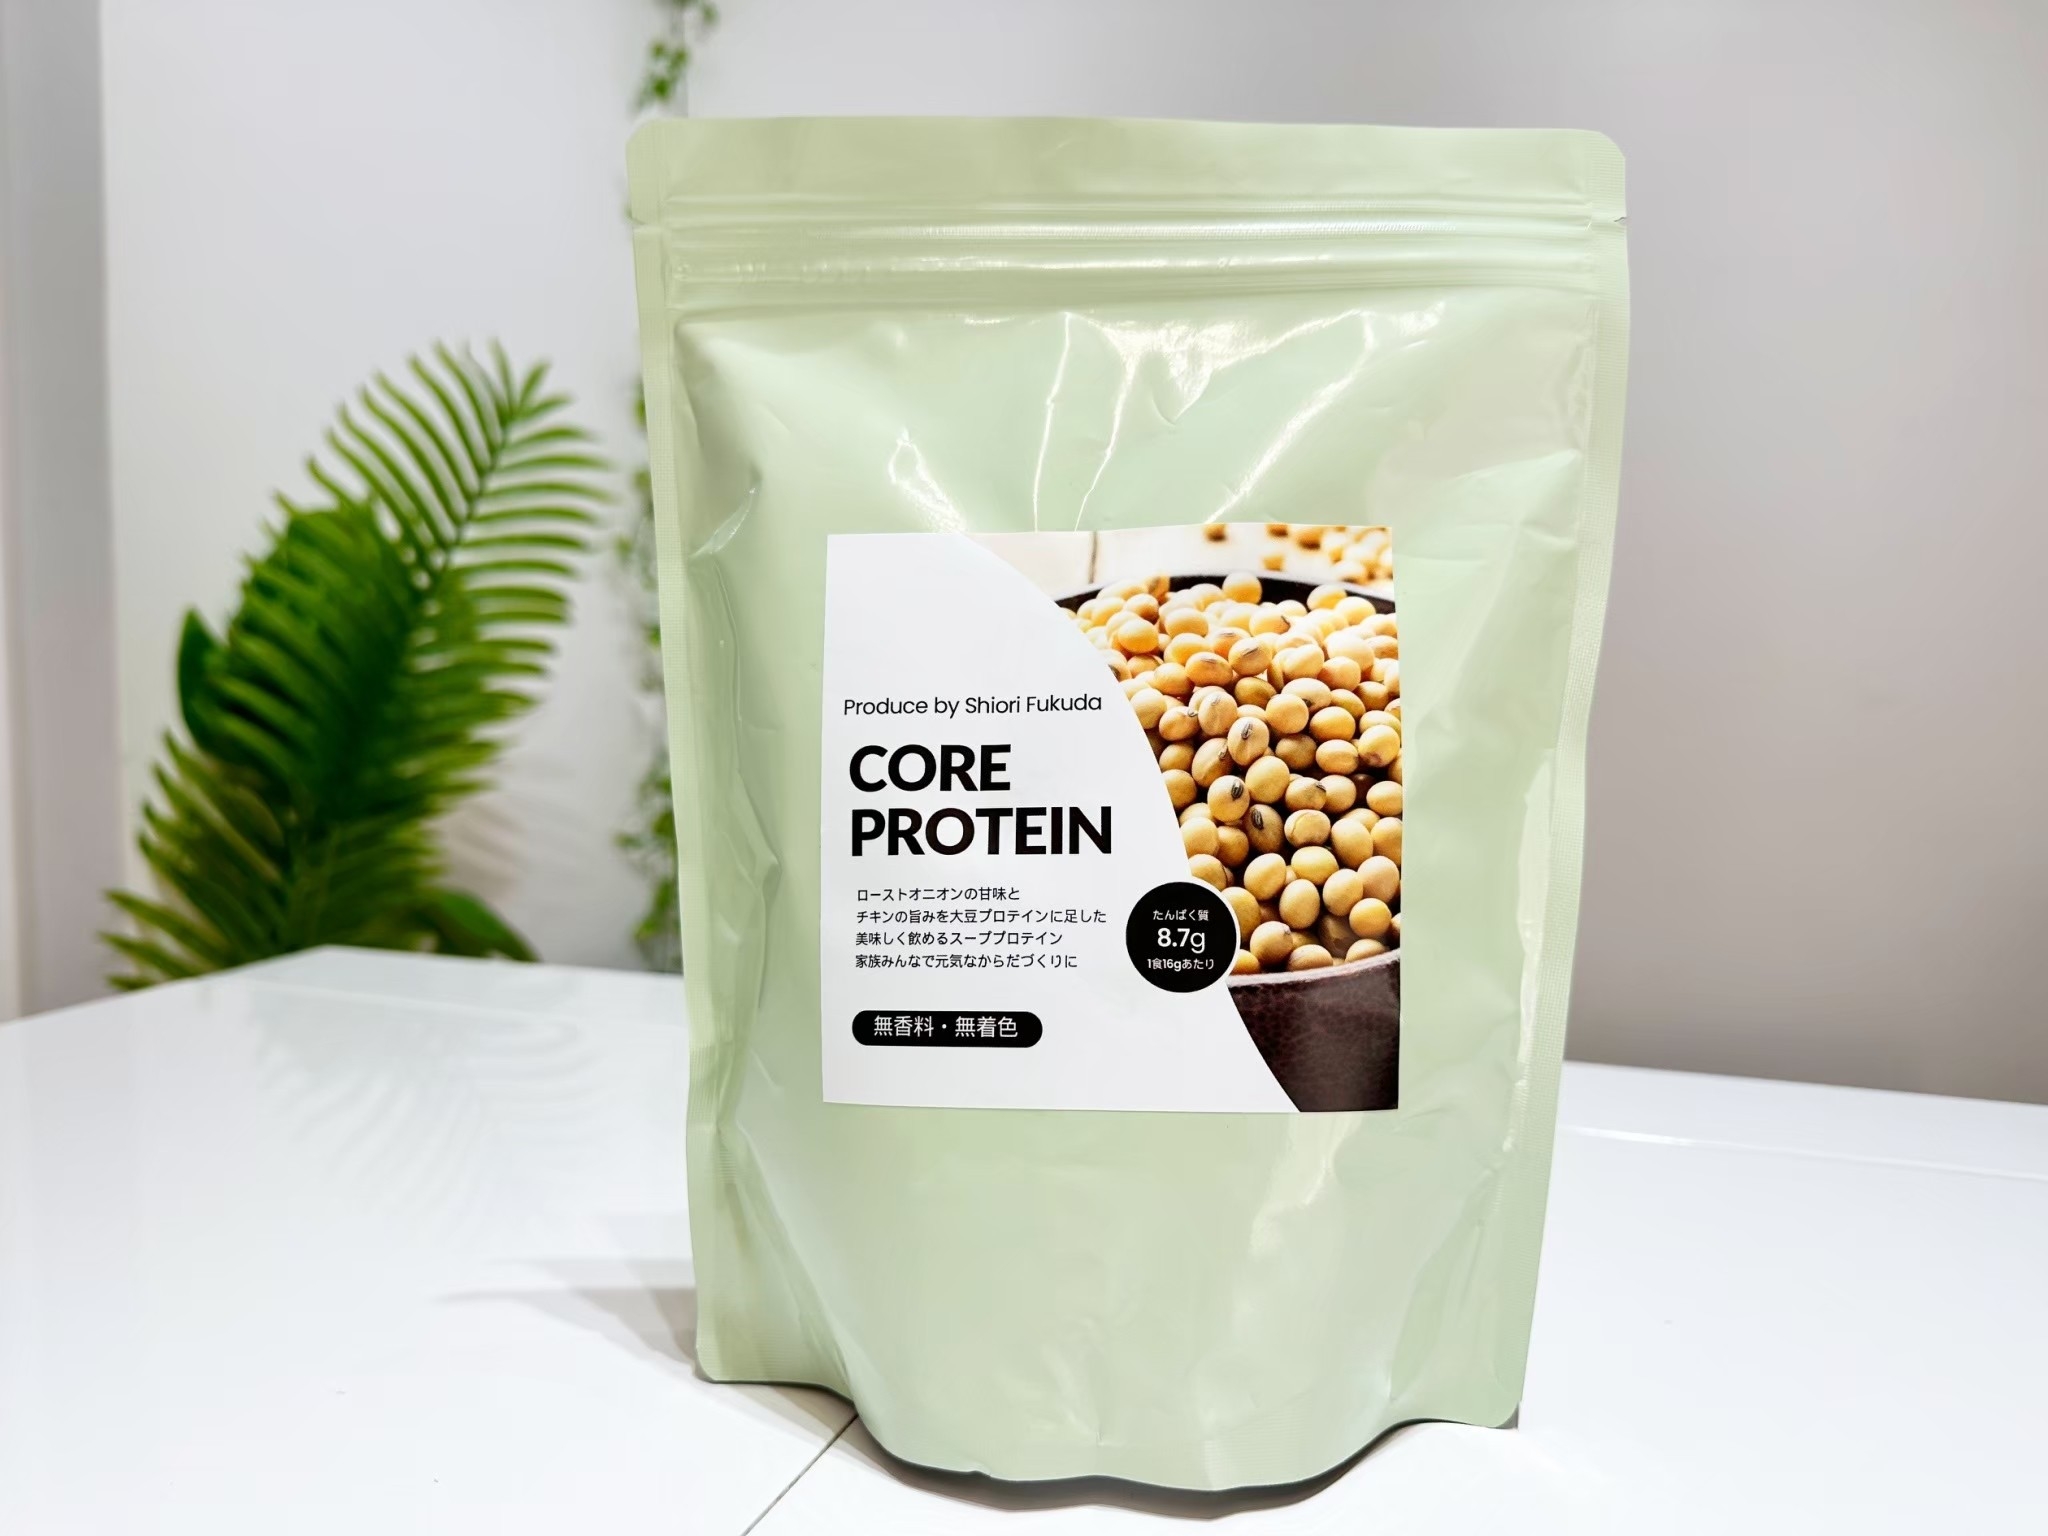 Core protein